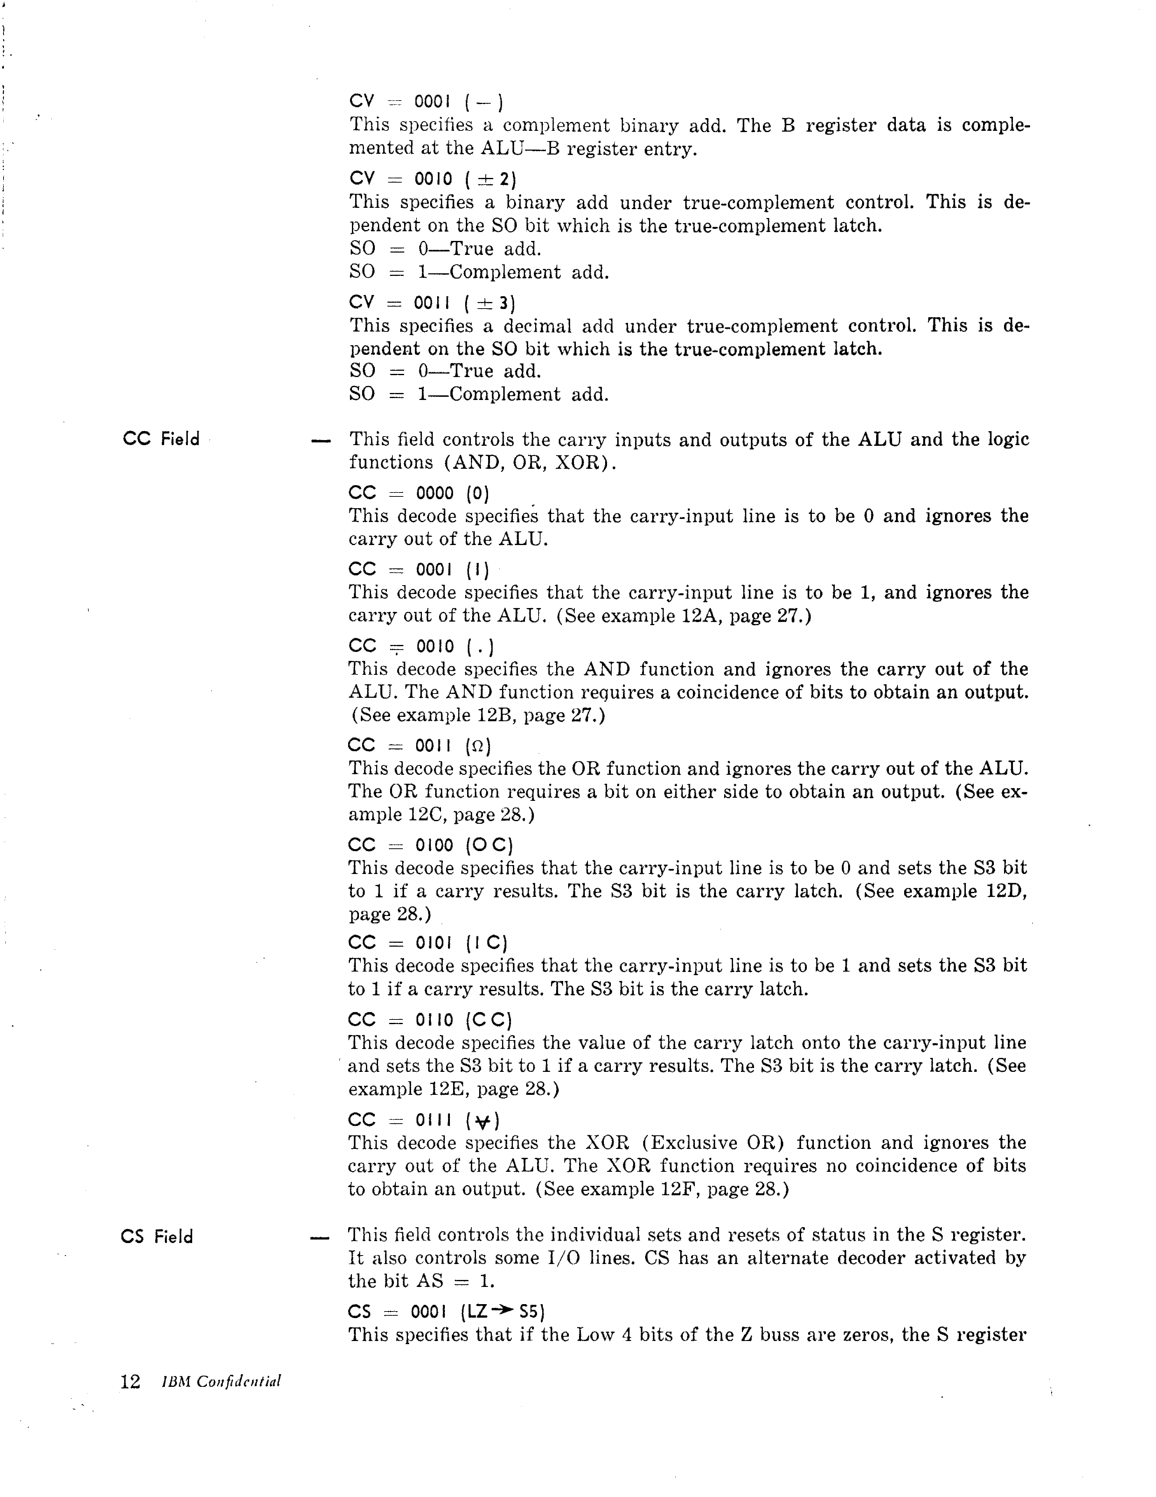 Model_30_Microprogramming_Lang.pdf page 14